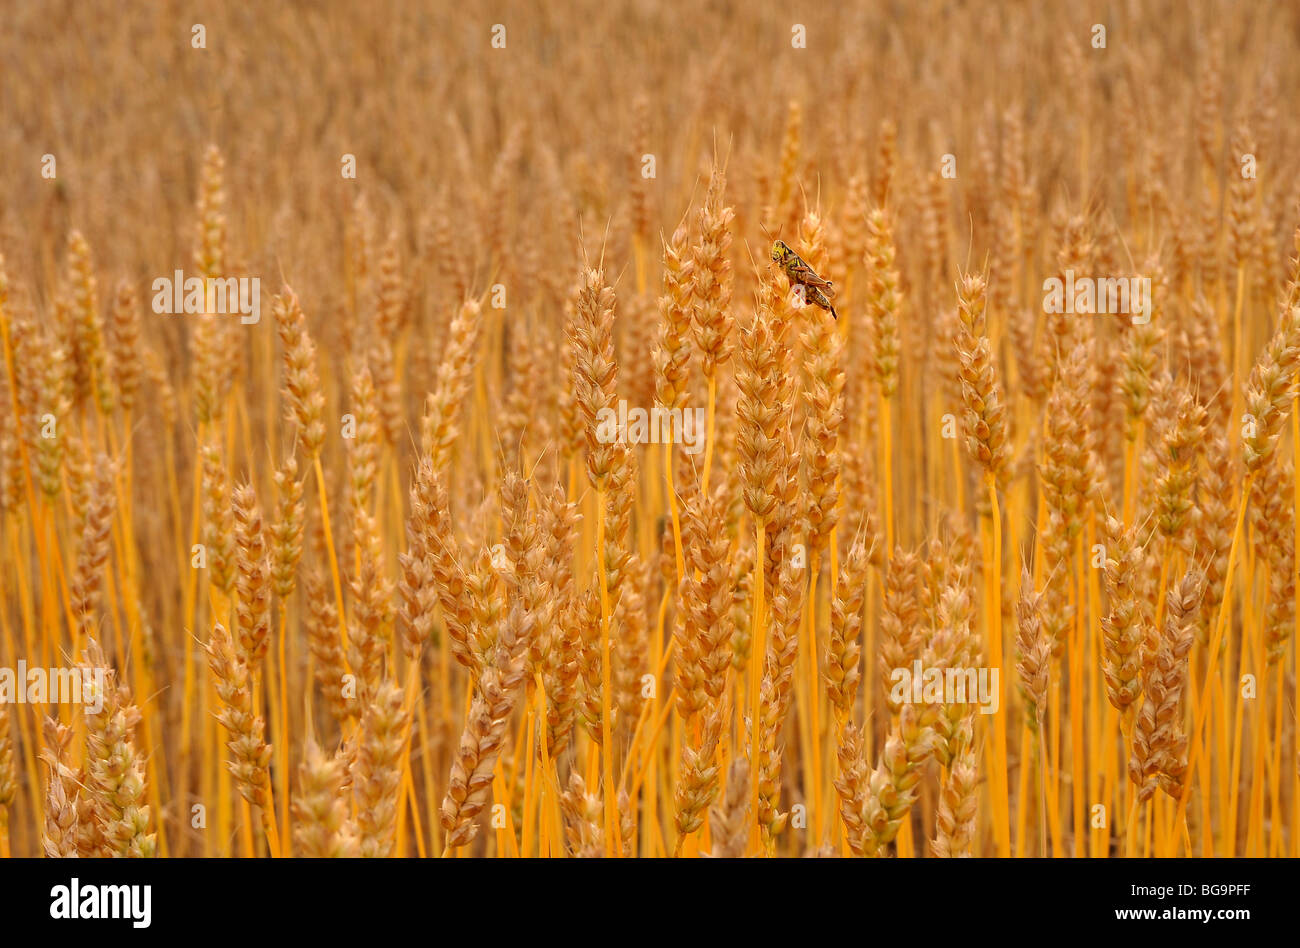 Eine Heuschrecke Insekt sitzt oben auf einen Stiel von gereiften Weizen auf einem Bauernhof Feld in ländlichen Alberta Kanada Stockfoto